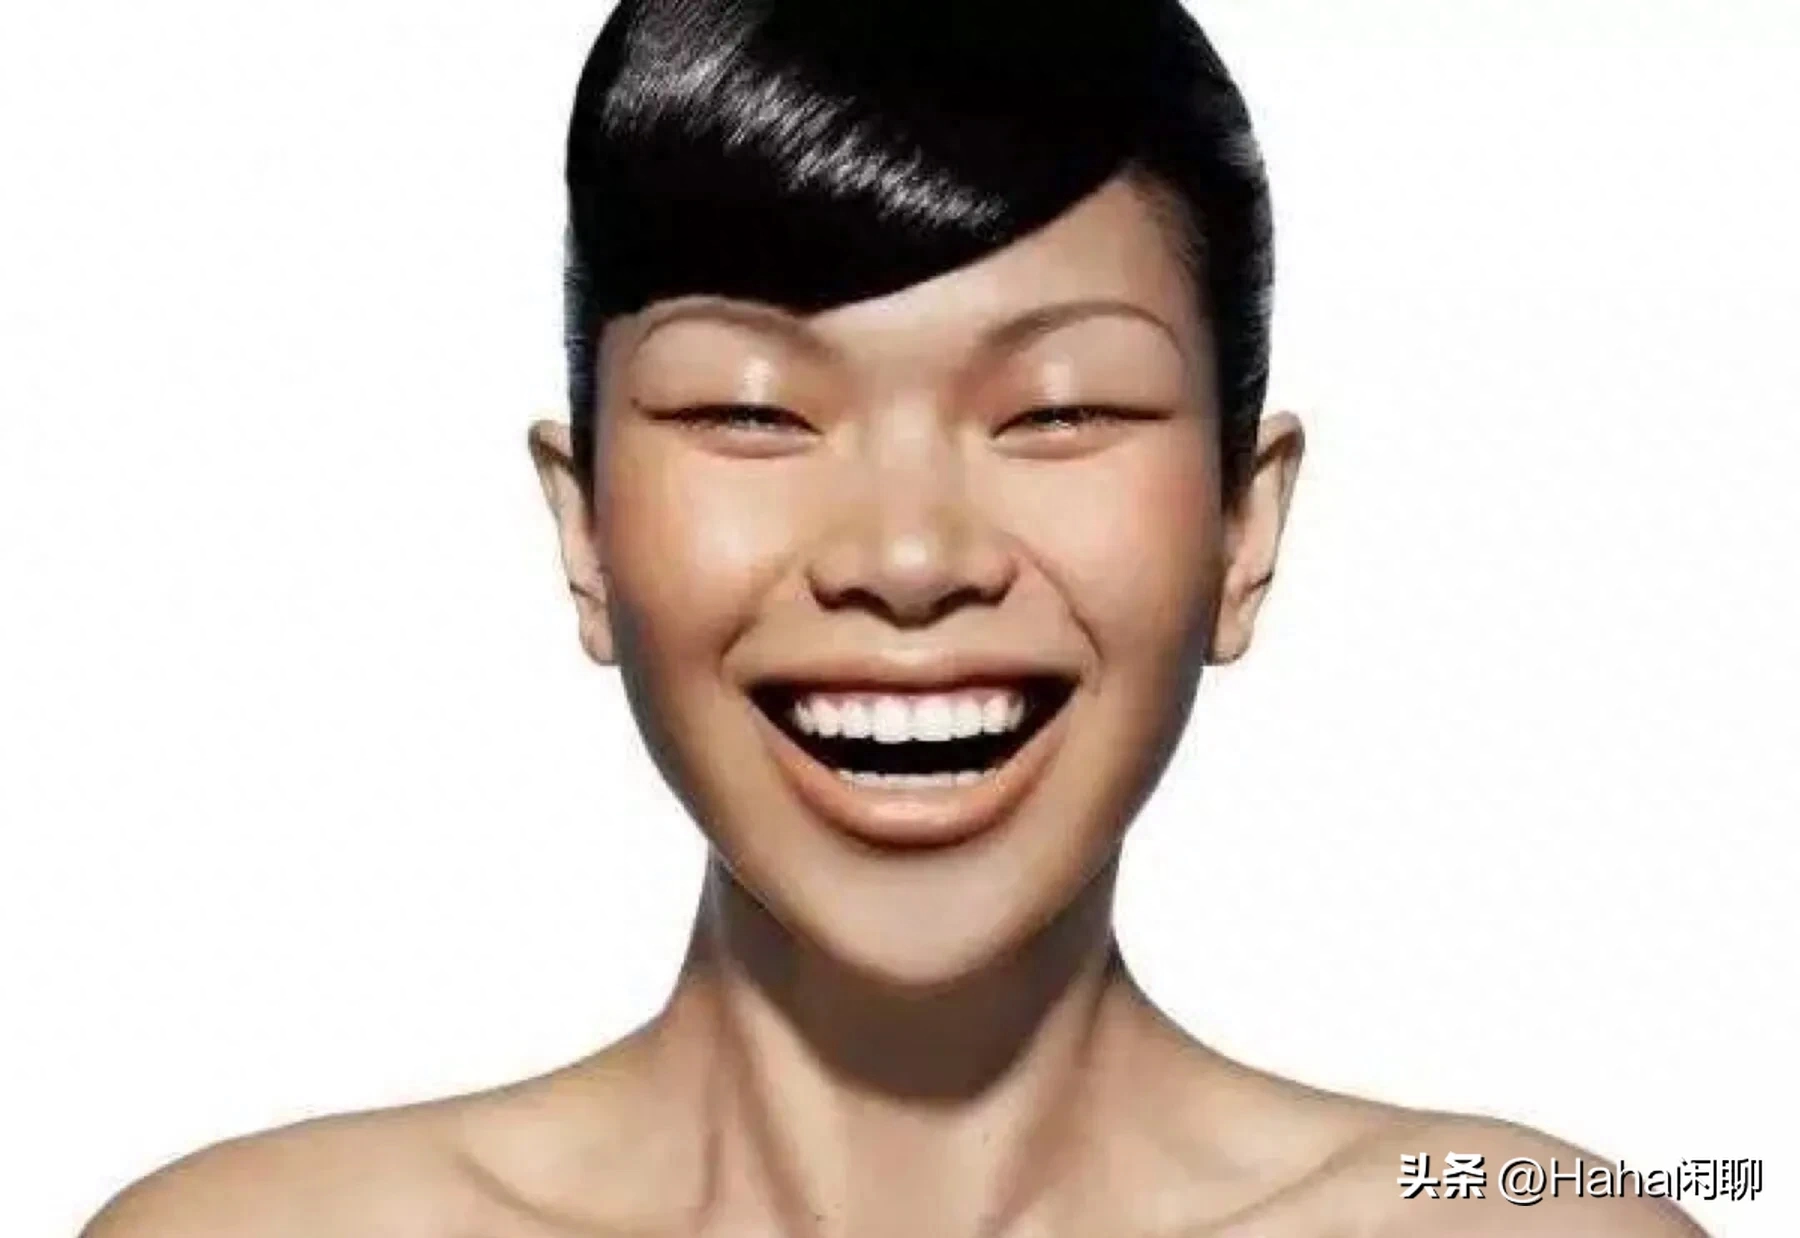 上海这场秀，瞿颖等中国超模的亮相，打了多少“洋人审美”的脸？